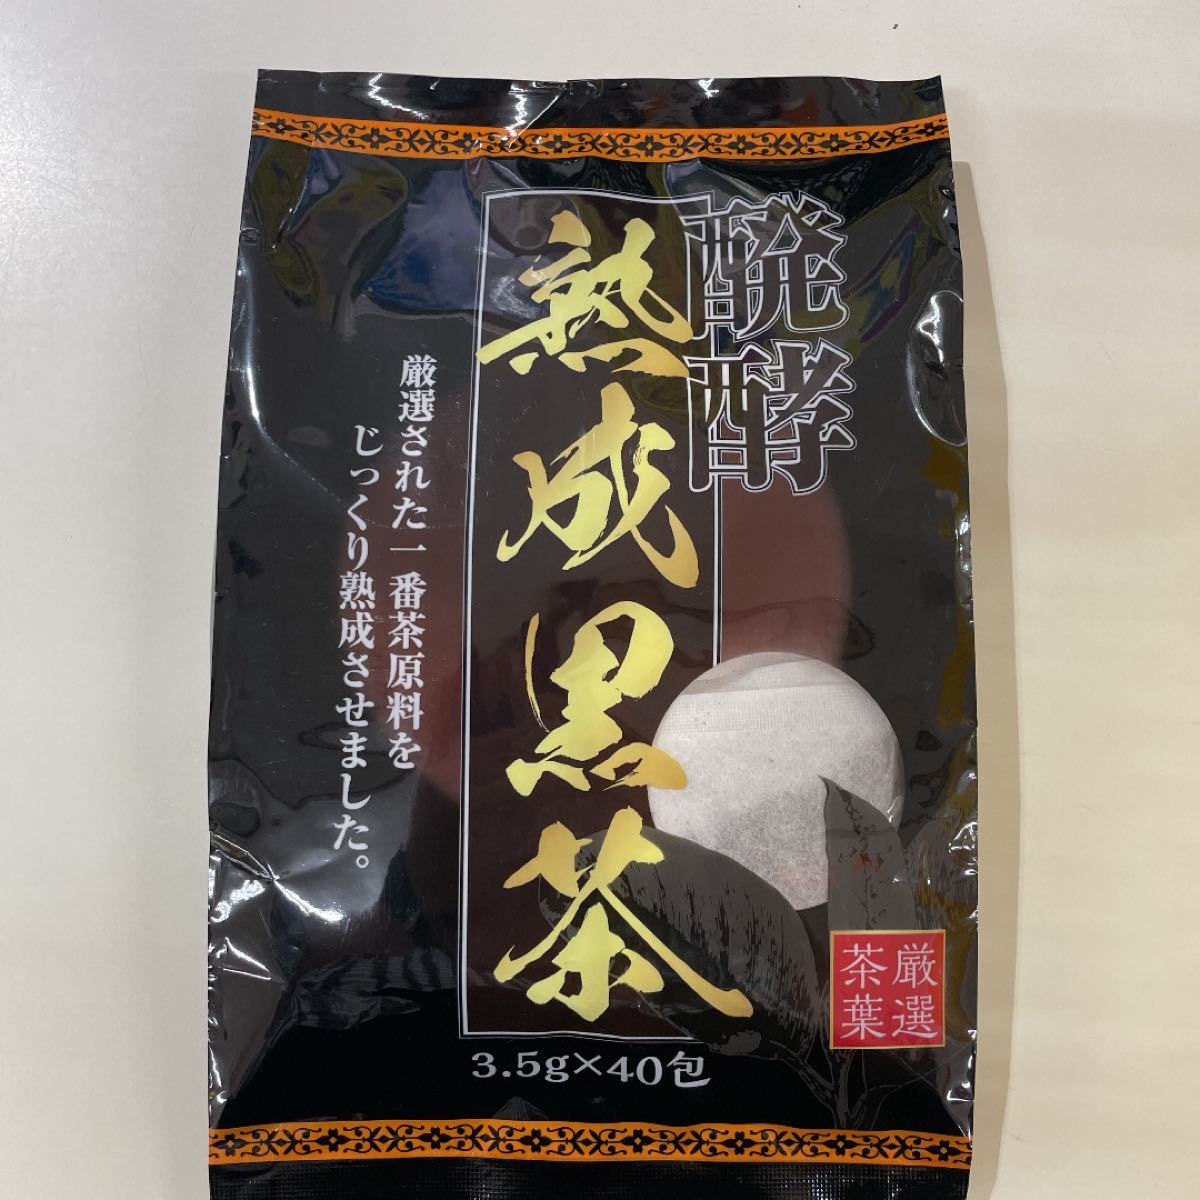 ユウキ製薬 醗酵熟成黒茶 プーアル ティーバッグ 3.5g×40包